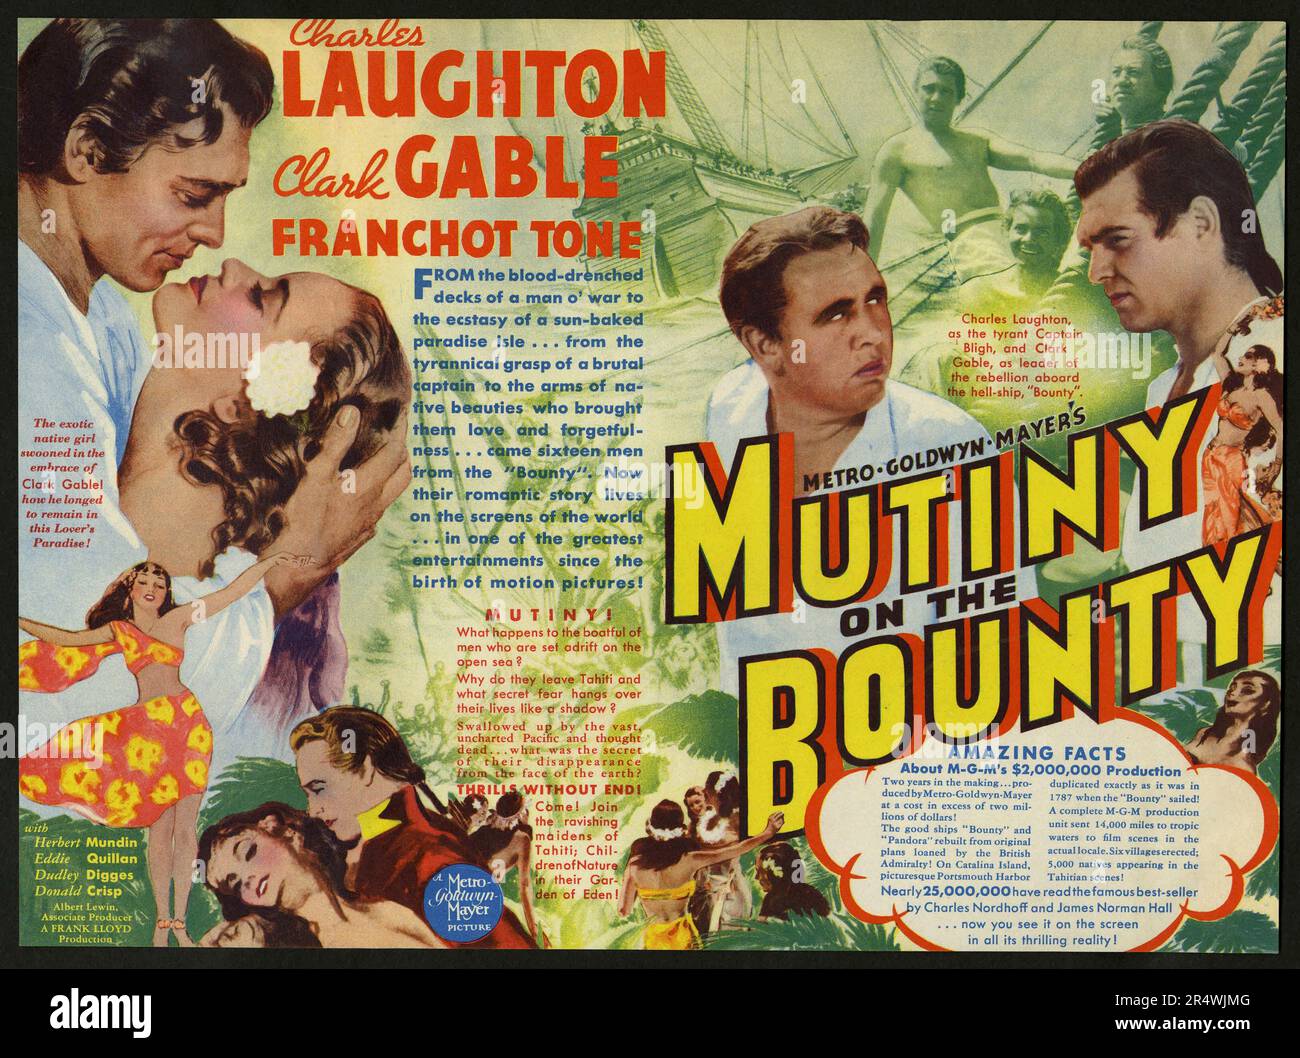 Meuterei auf der Bounty ist ein 1935 Film mit Charles Laughton und Clark Gable, und von Frank Lloyd gerichtet auf dem Charles Nordhoff und James Norman Hall Roman Meuterei auf der Bounty. Obwohl seine historische Genauigkeit in Frage gestellt wurde, film Kritiker halten diese Anpassung die beste filmische Arbeiten, inspiriert durch die Meuterei. Stockfoto